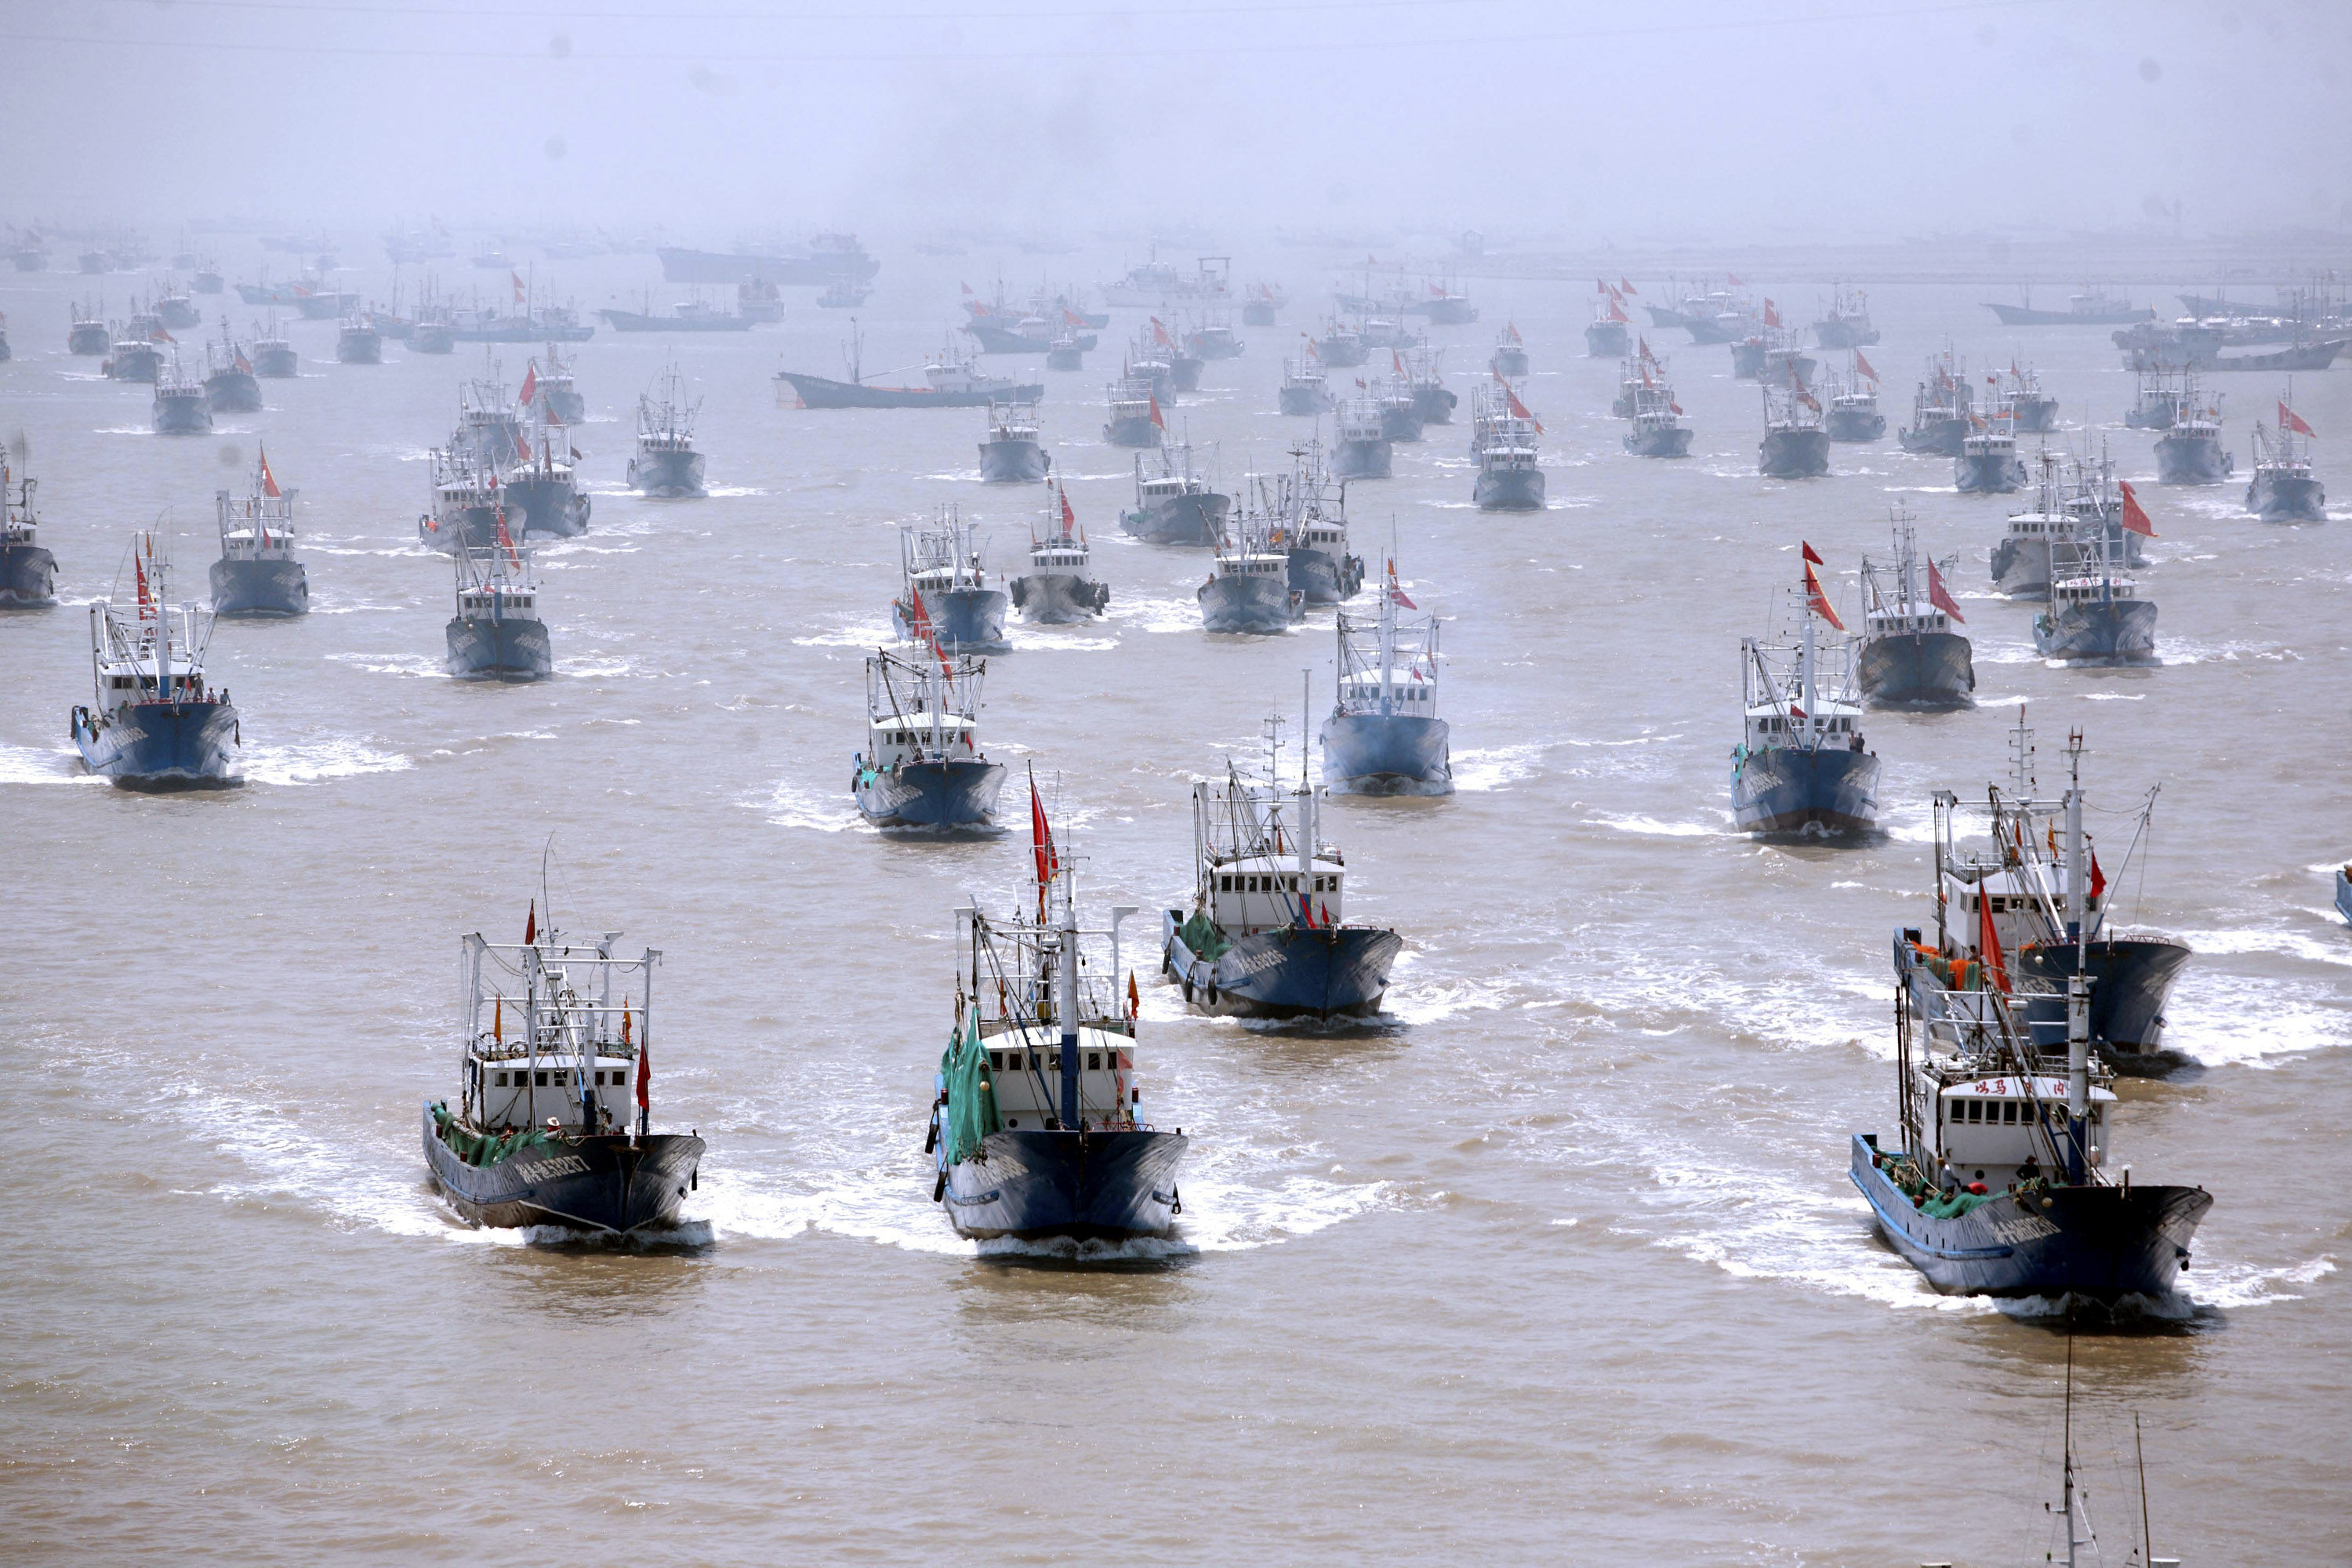 中国漁船 「数百隻」 尖閣近海で操業中 1000隻は集結せず : 政治 ...3000 x 2000